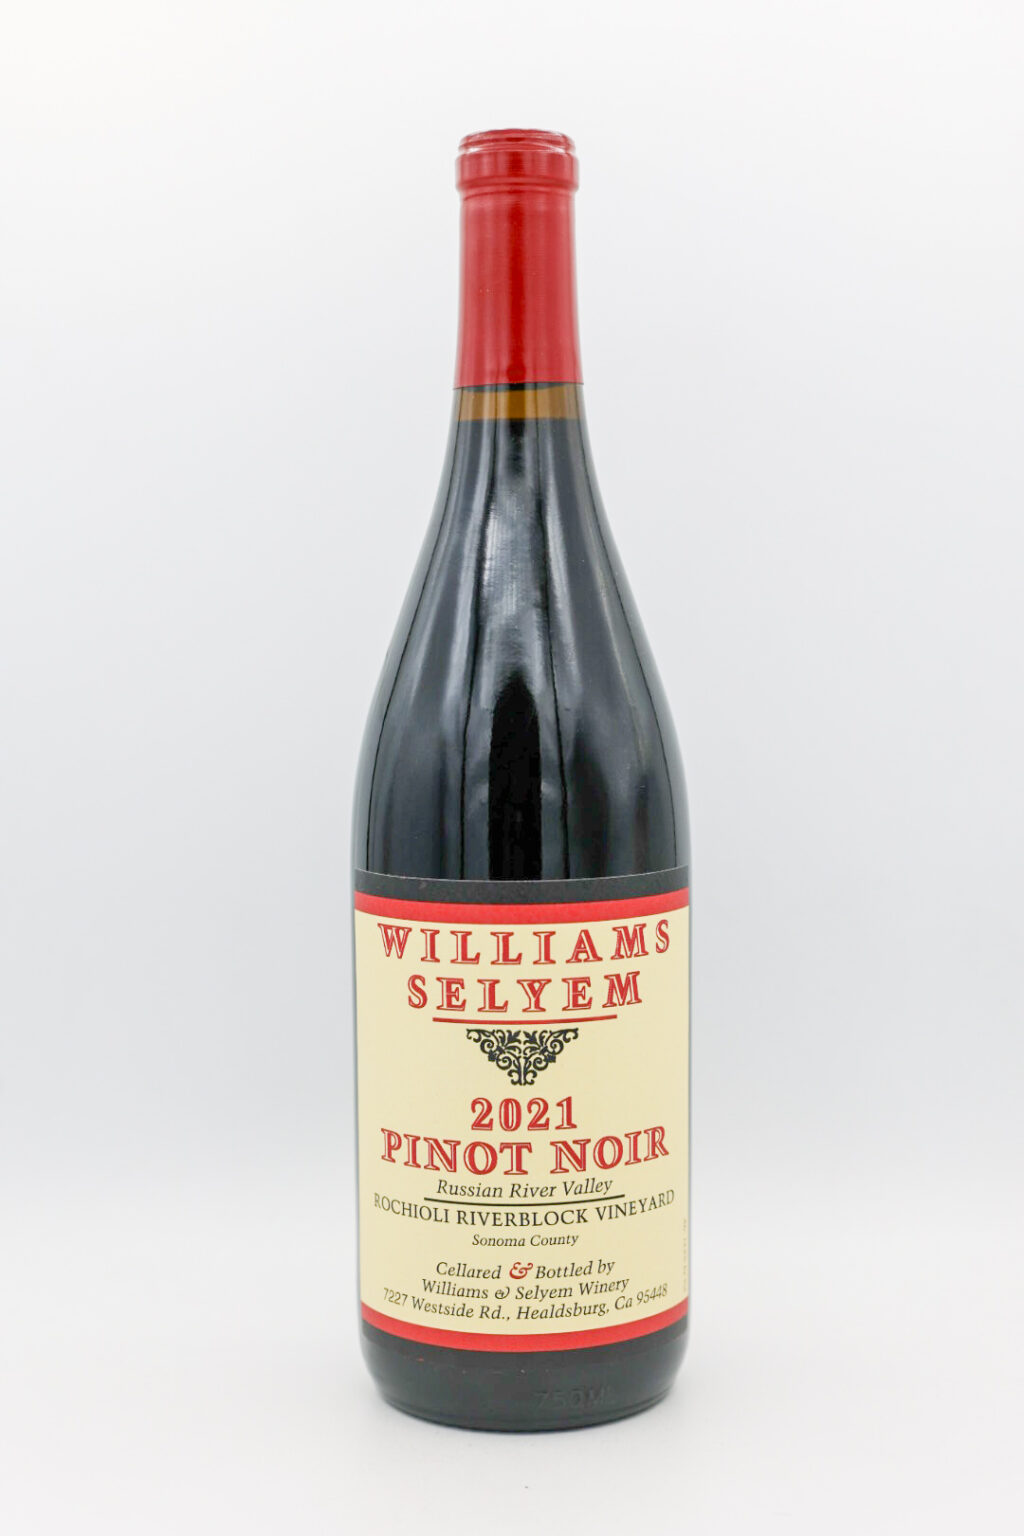 Williams Selyem Pinot Noir Rochiolli 2021